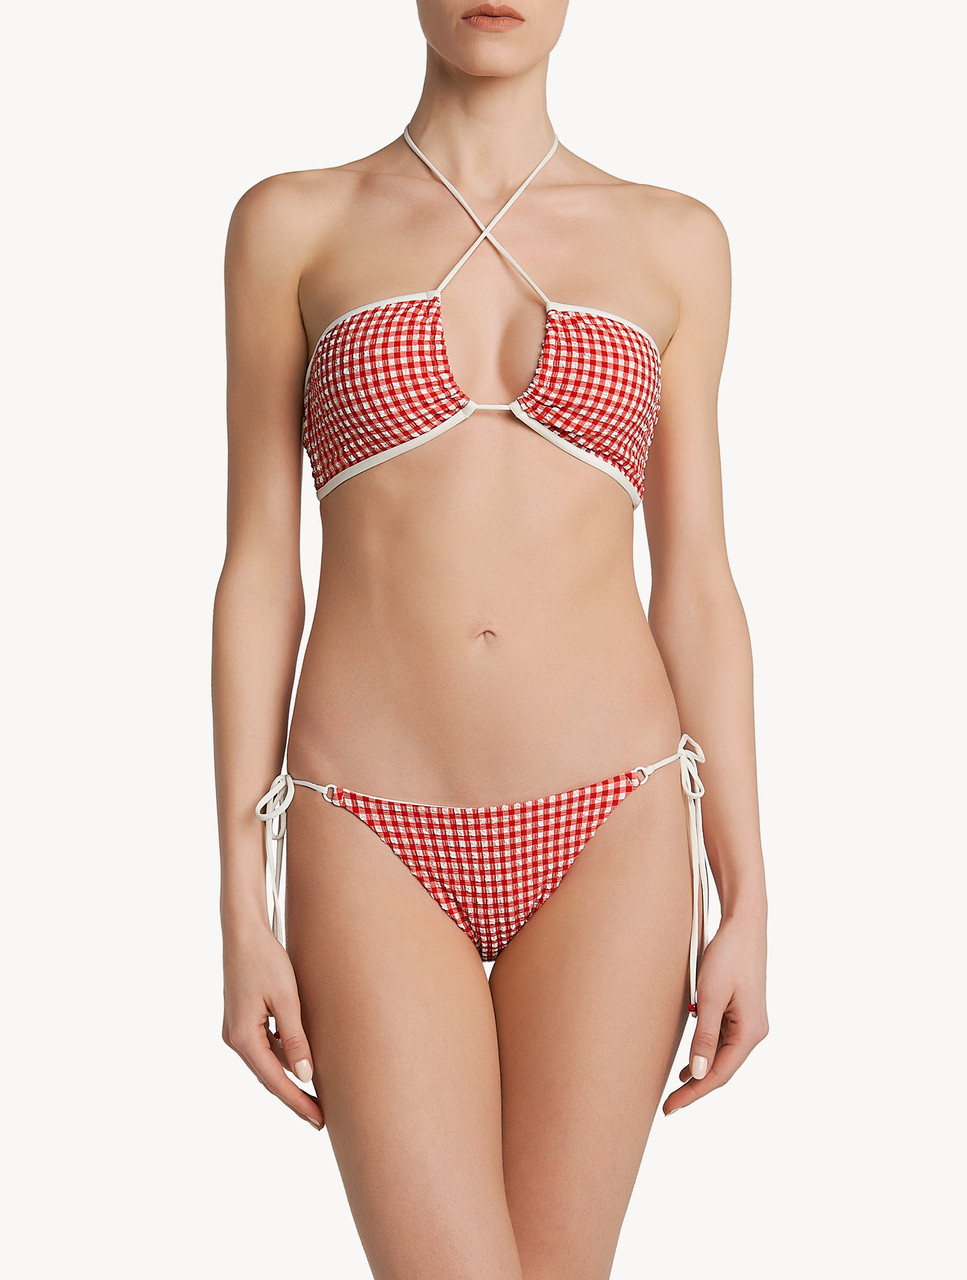 Bikini top in red gingham